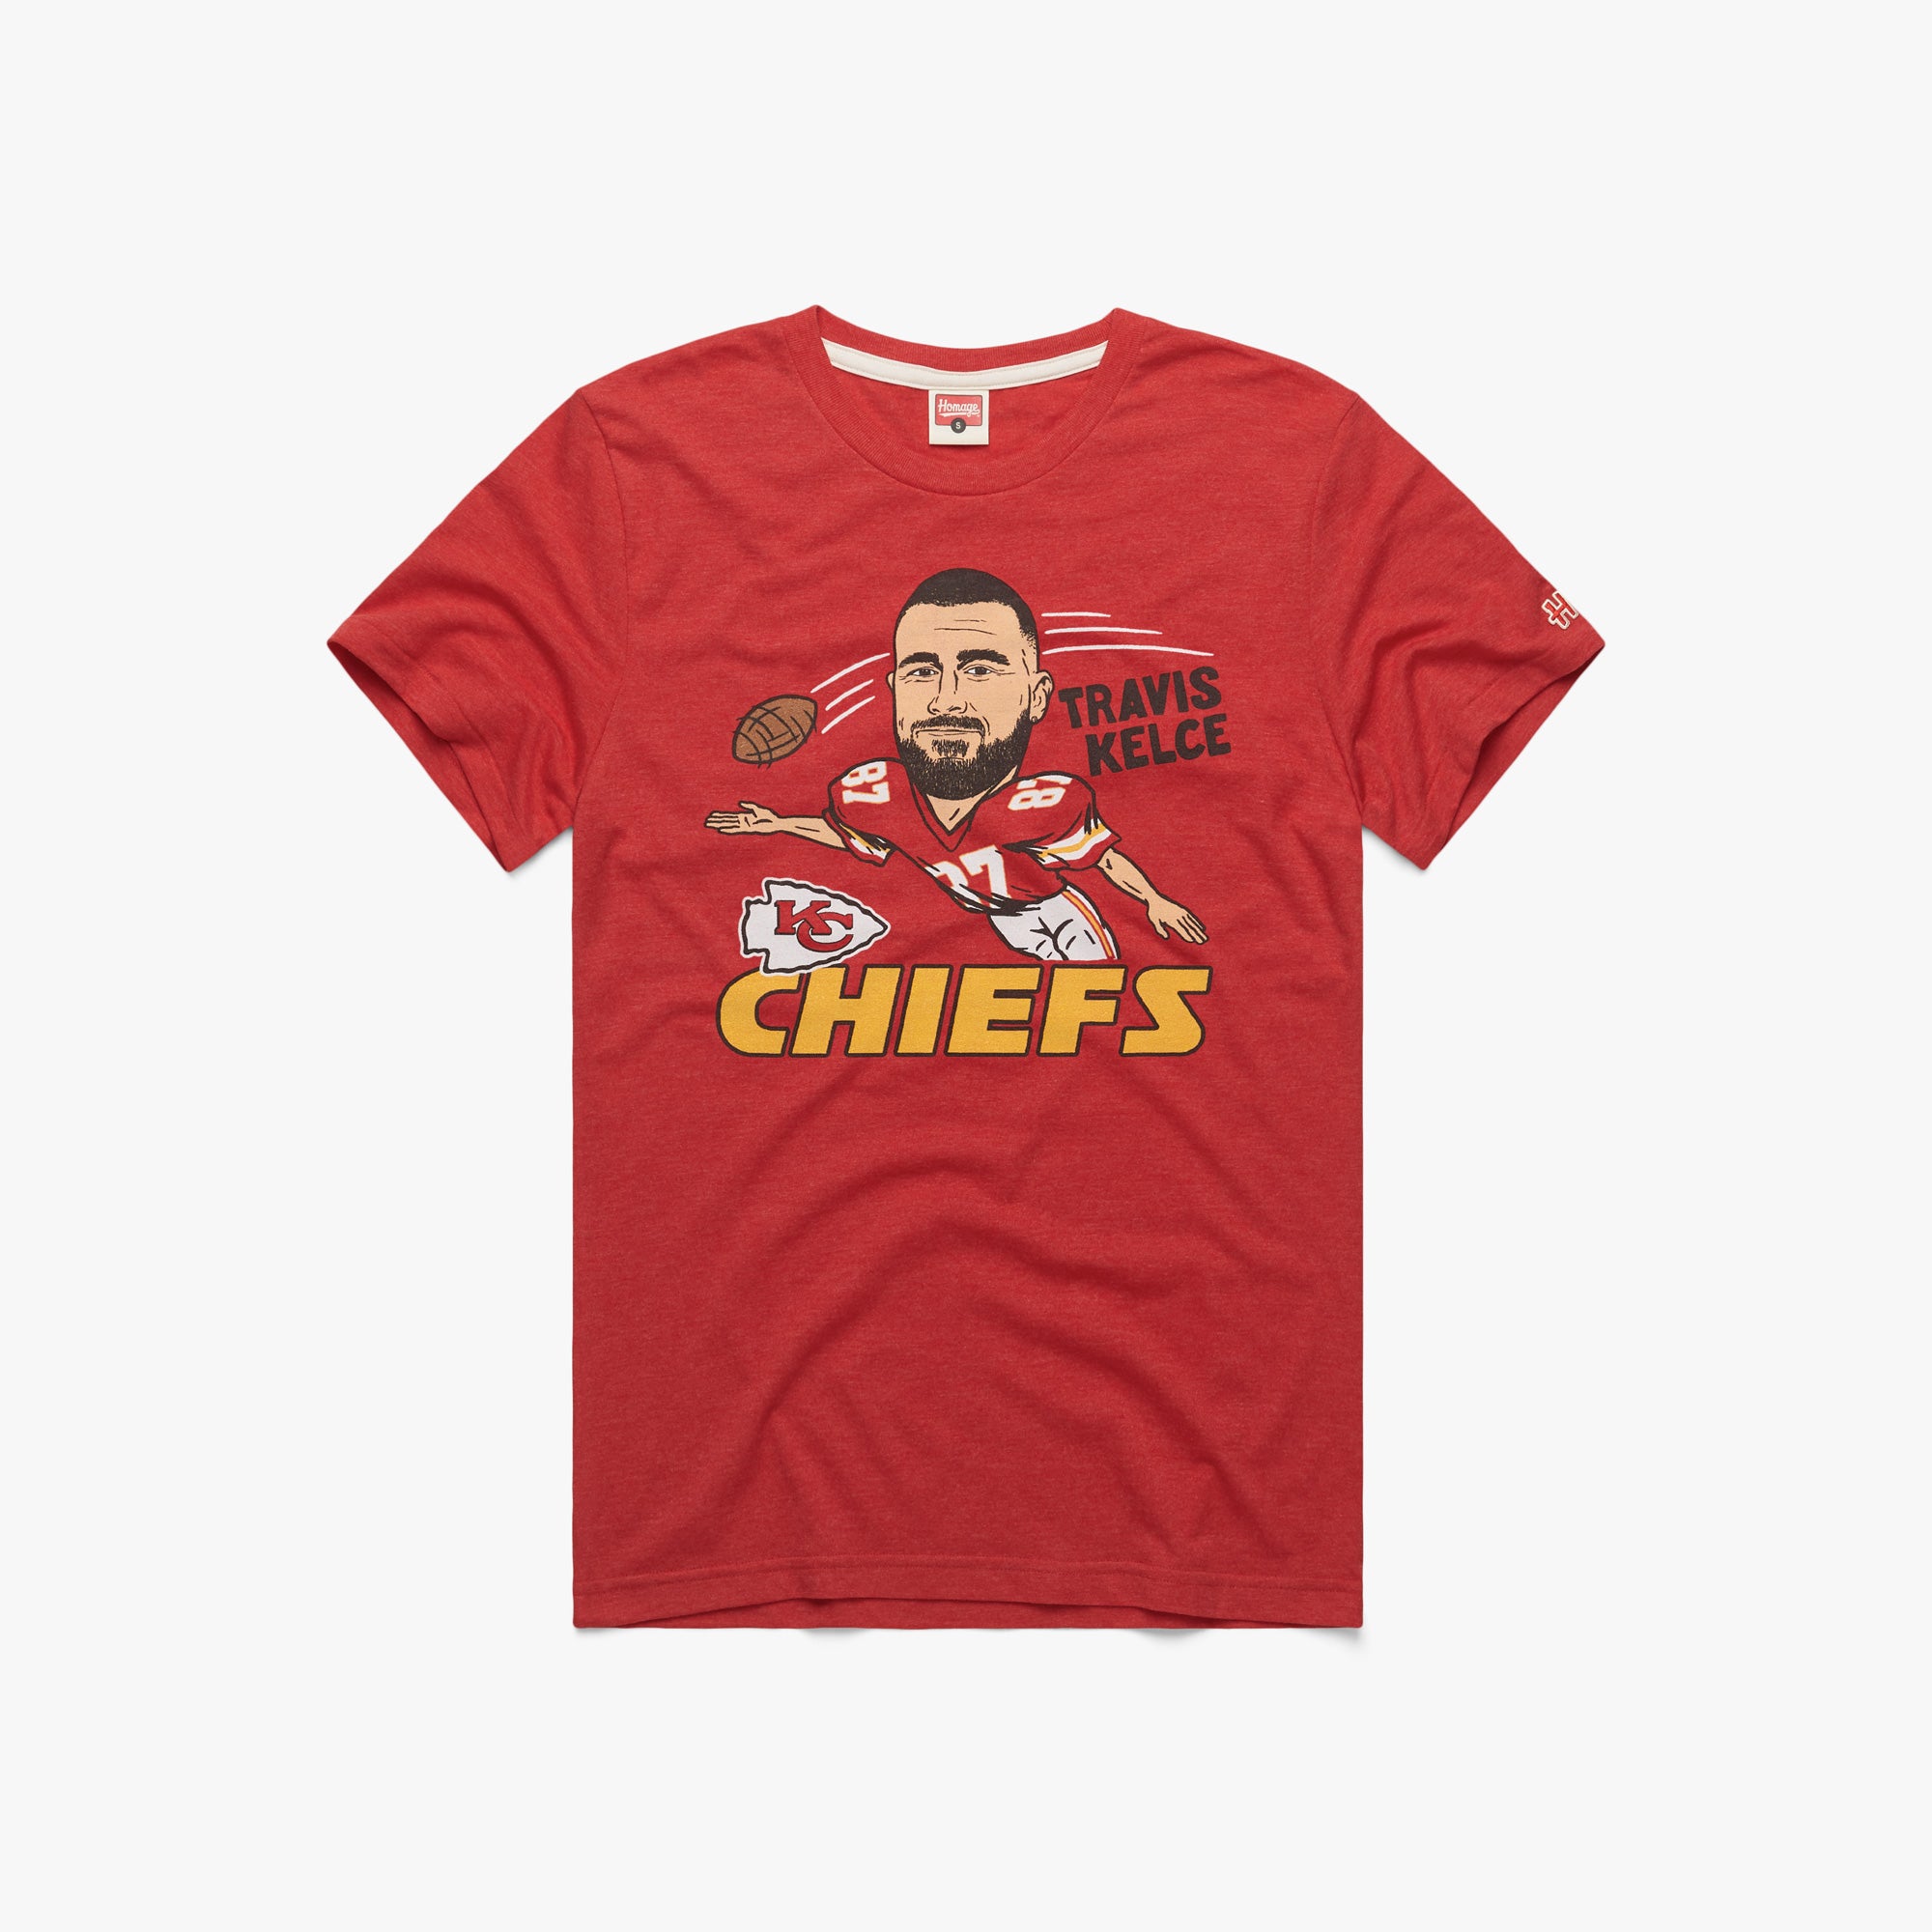 Friends TV show Kansas City Chiefs shirt